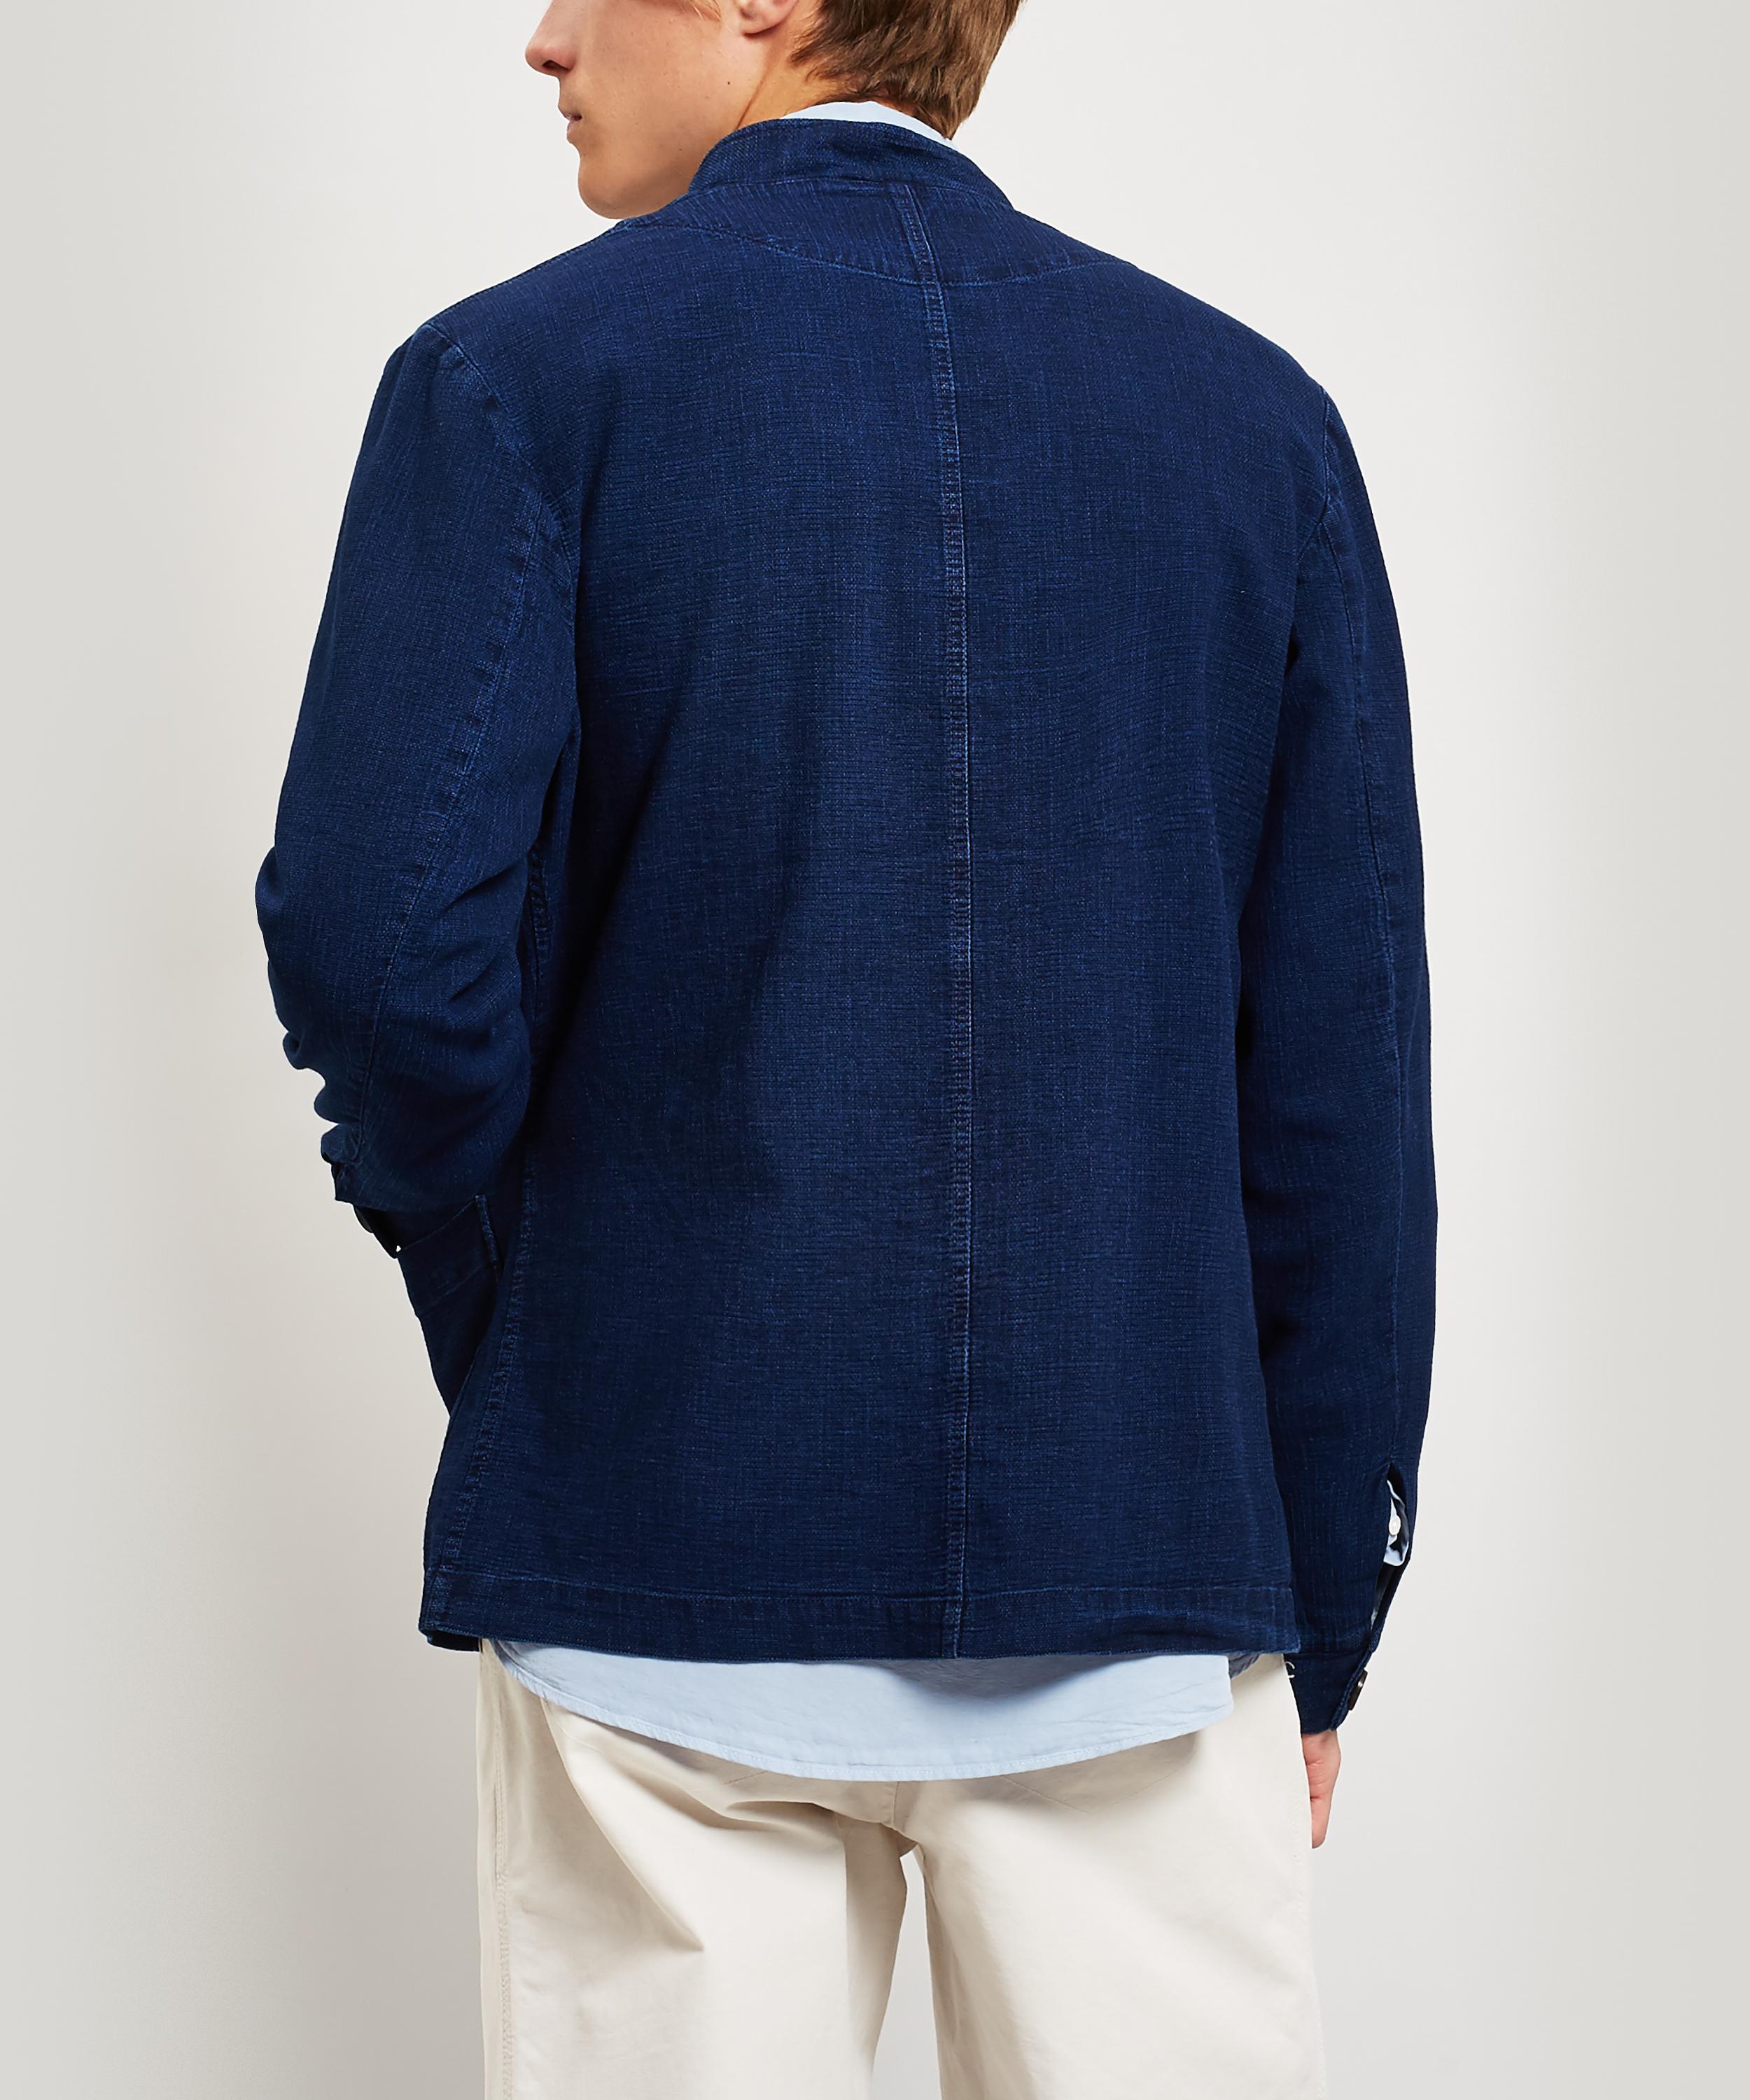 Oliver Spencer Artist Cotton Jacket in Blue for Men - Lyst